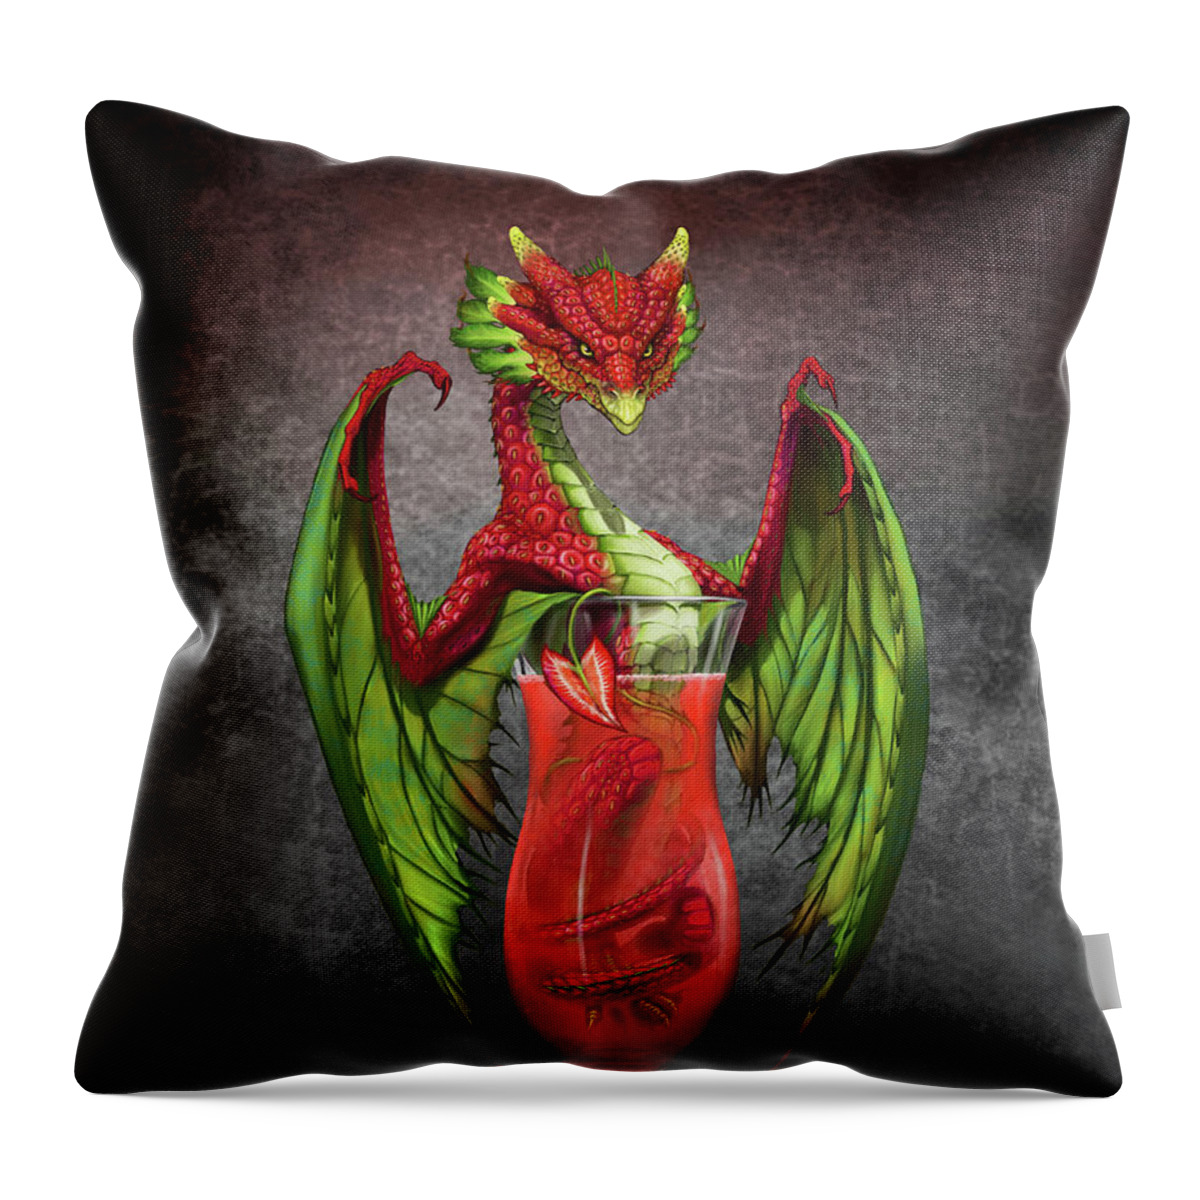 Daiquiri Throw Pillow featuring the digital art Daiquiri Dragon by Stanley Morrison